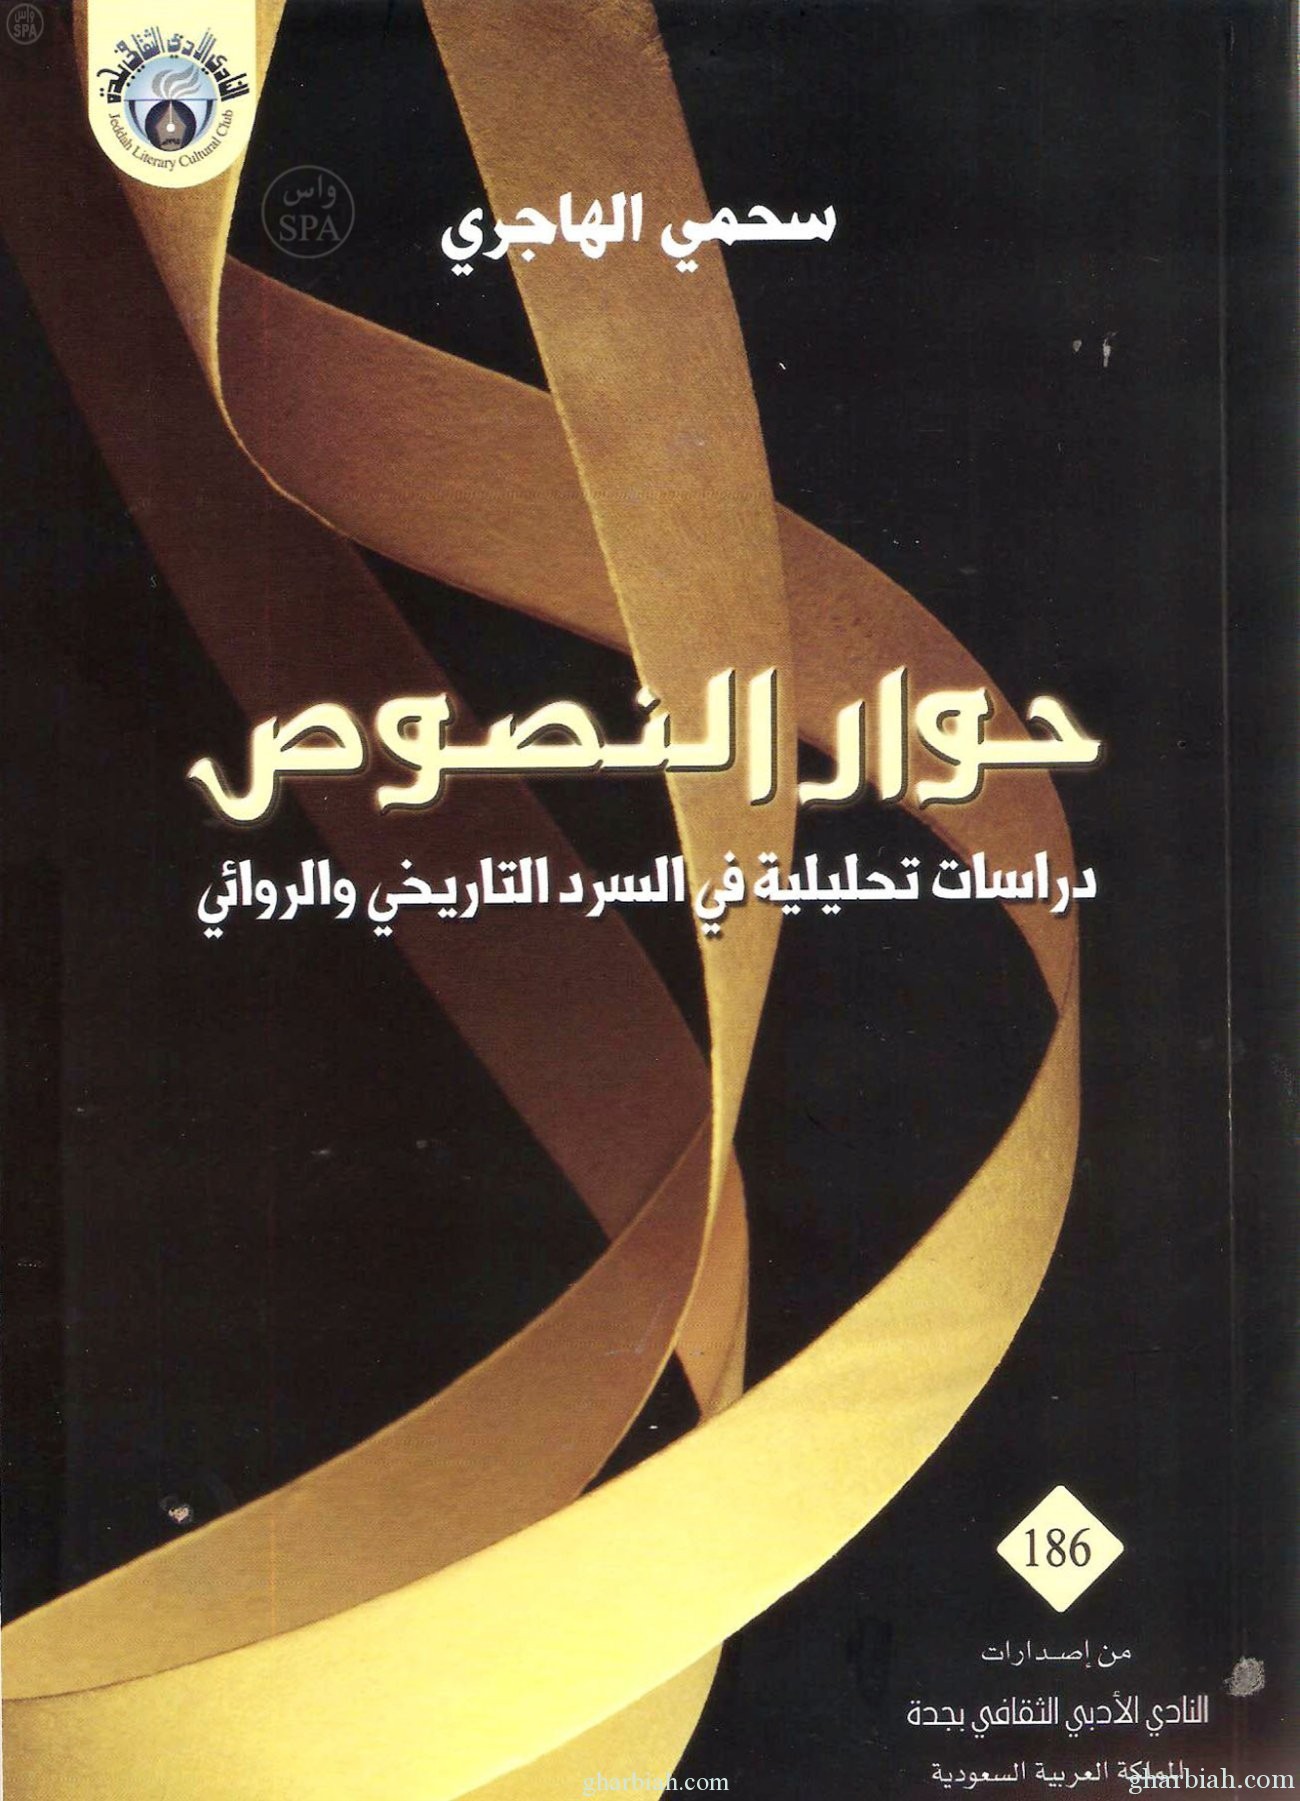 نادي جدة الأدبي الثقافي : يصدر كتاباً بعنوان "حوار النصوص في السرد الروائي"